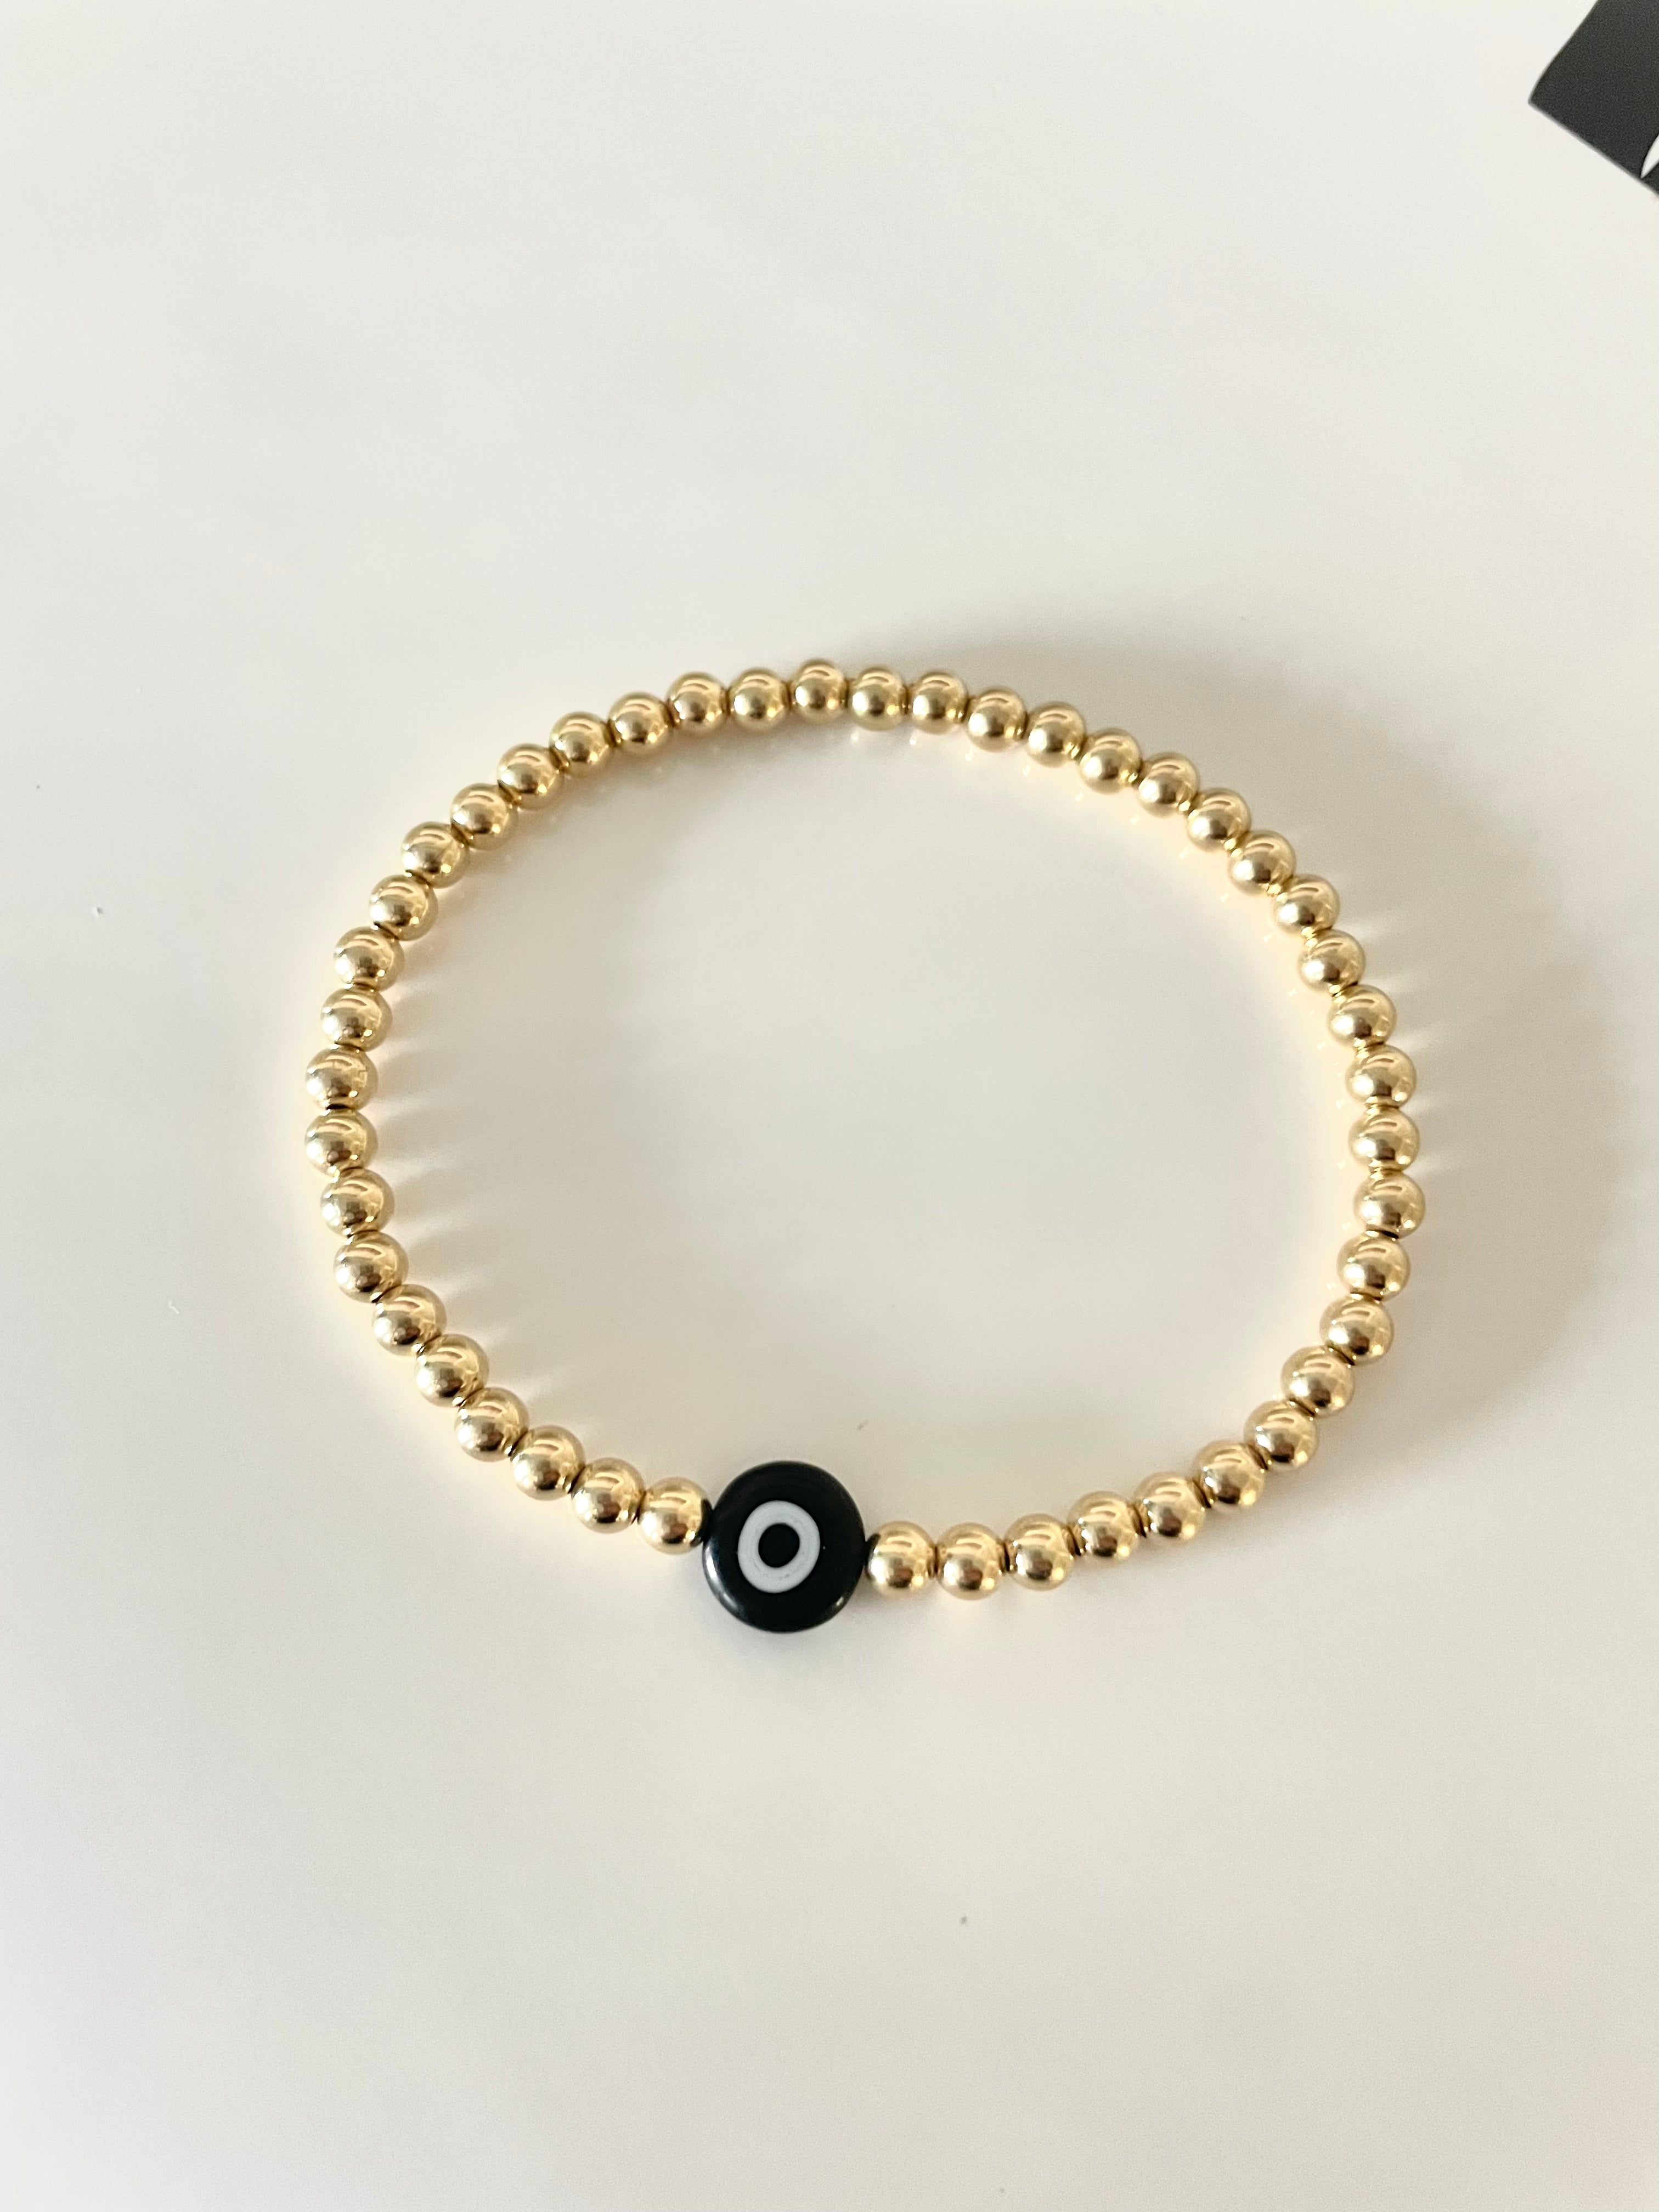 14k Gold Filled Beaded Gold Bracelet with Black Evil Eye Bead